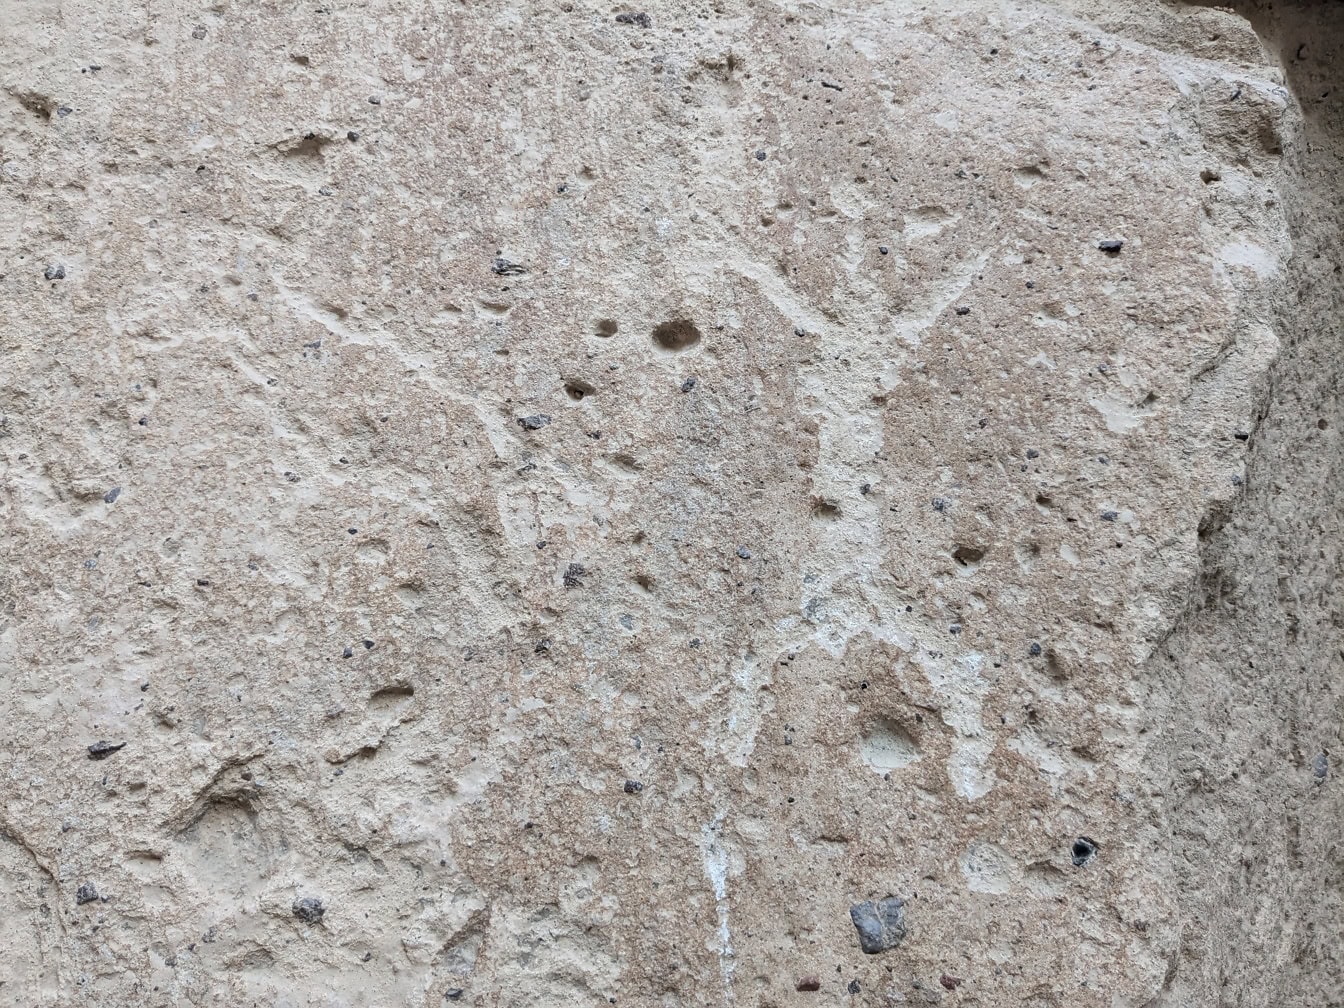 Sebuah petroglif yang diukir di batu yang menggambarkan orang Zaman Batu dengan tangan dan kaki terentang